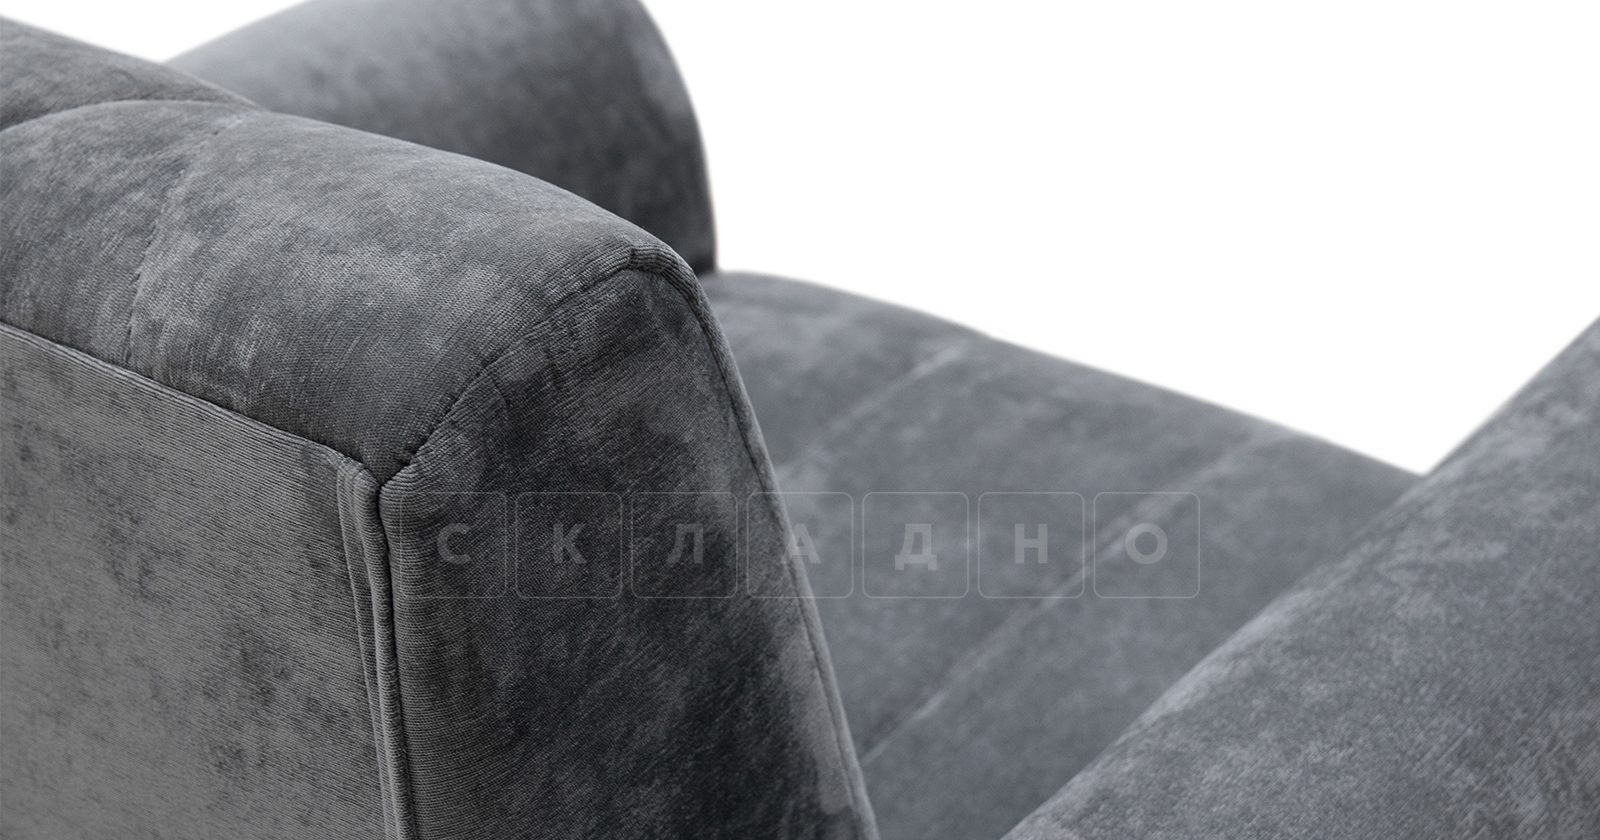 Кресло для отдыха Роза стальной серый фото 8 | интернет-магазин Складно